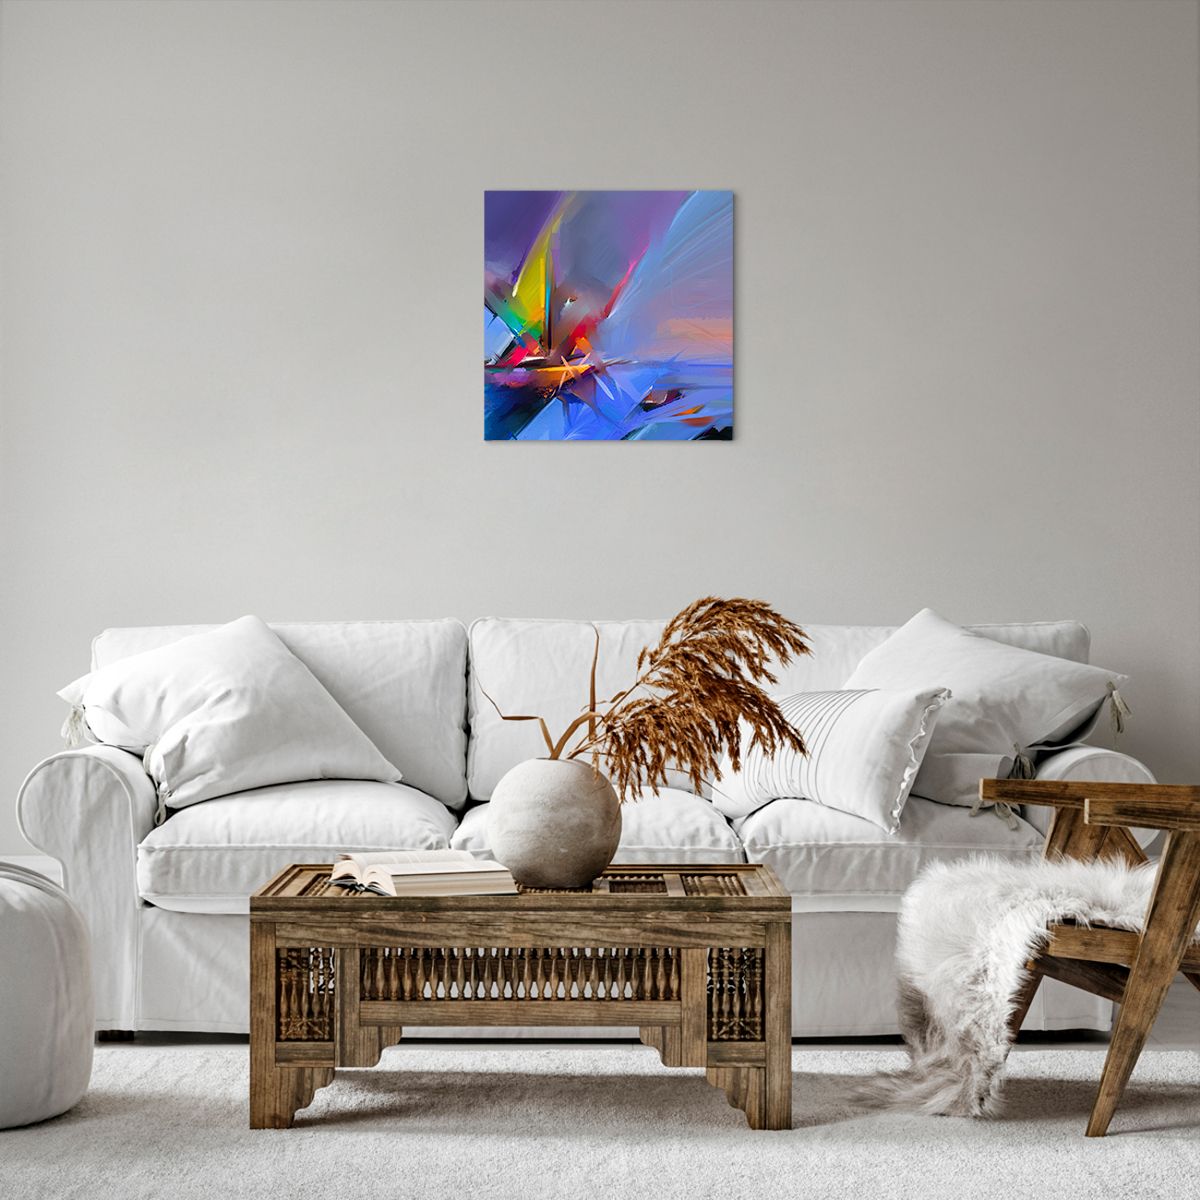 Bild auf Leinwand Abstraktion, Bild auf Leinwand Kunst, Bild auf Leinwand Segelboot, Bild auf Leinwand Moderne Kunst, Bild auf Leinwand Malerei